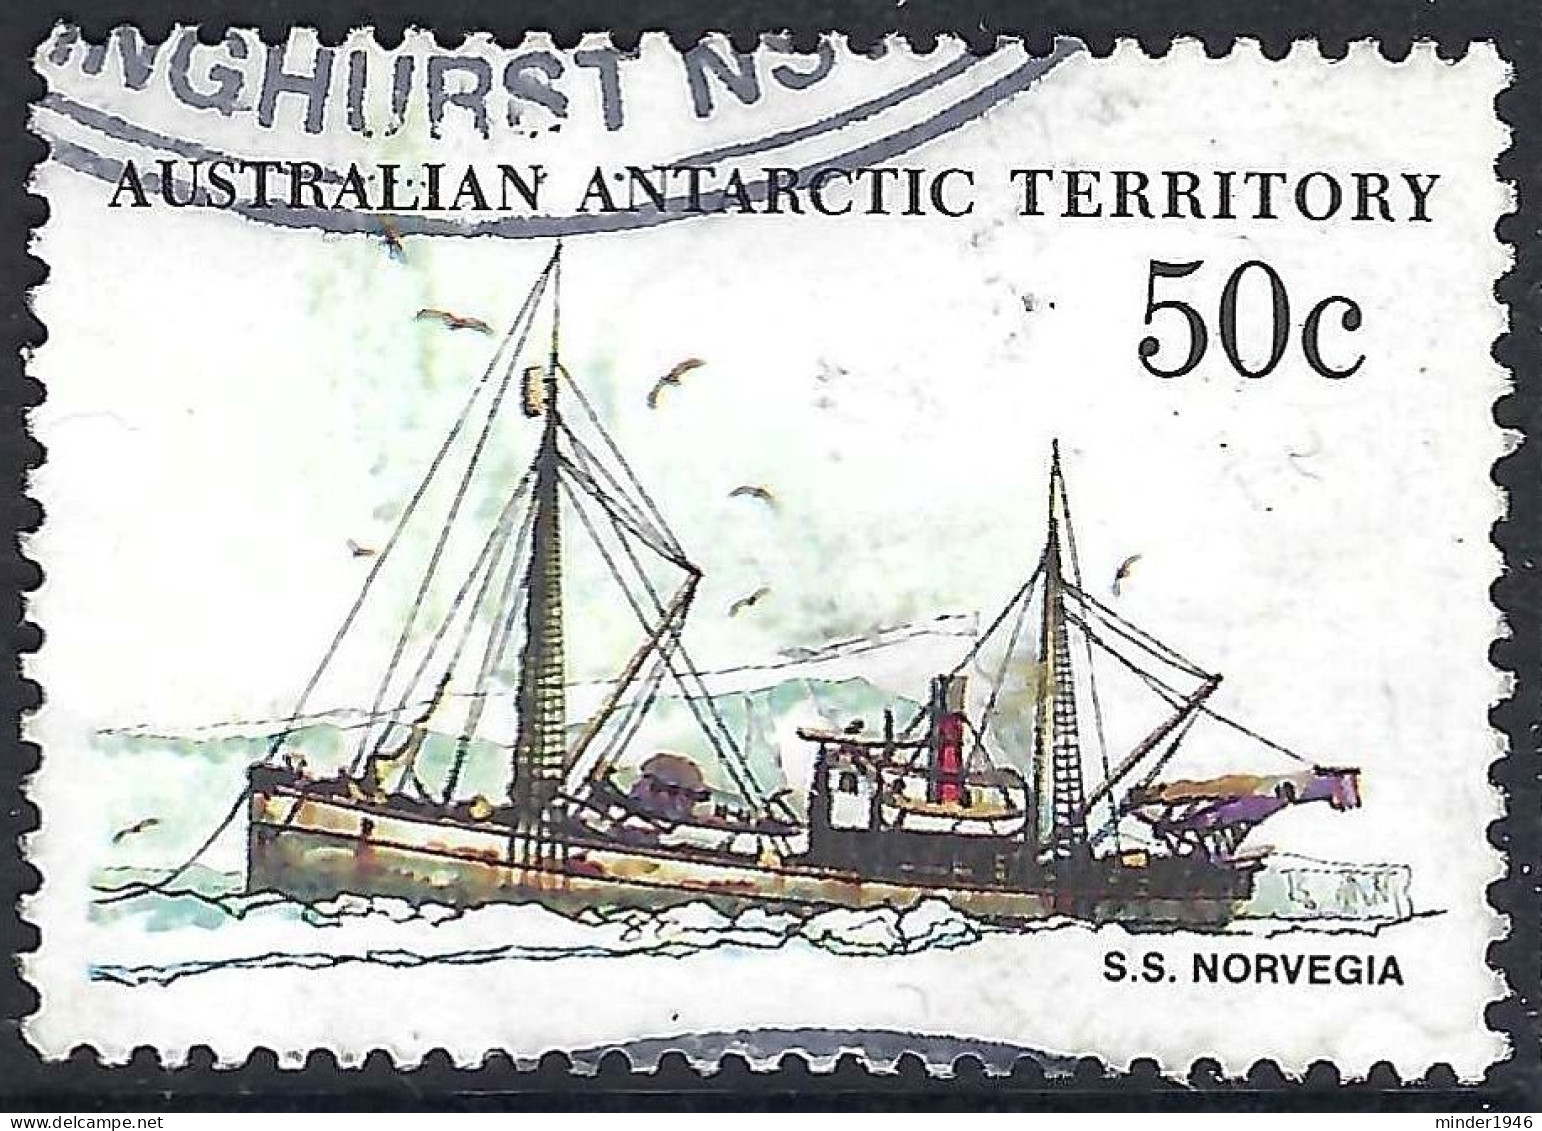 AUSTRALIAN ANTARCTIC TERRITORY (AAT) 1979 QEII 50c Multicoloured 'Ships, S.S Norvegia SG50 FU - Gebraucht